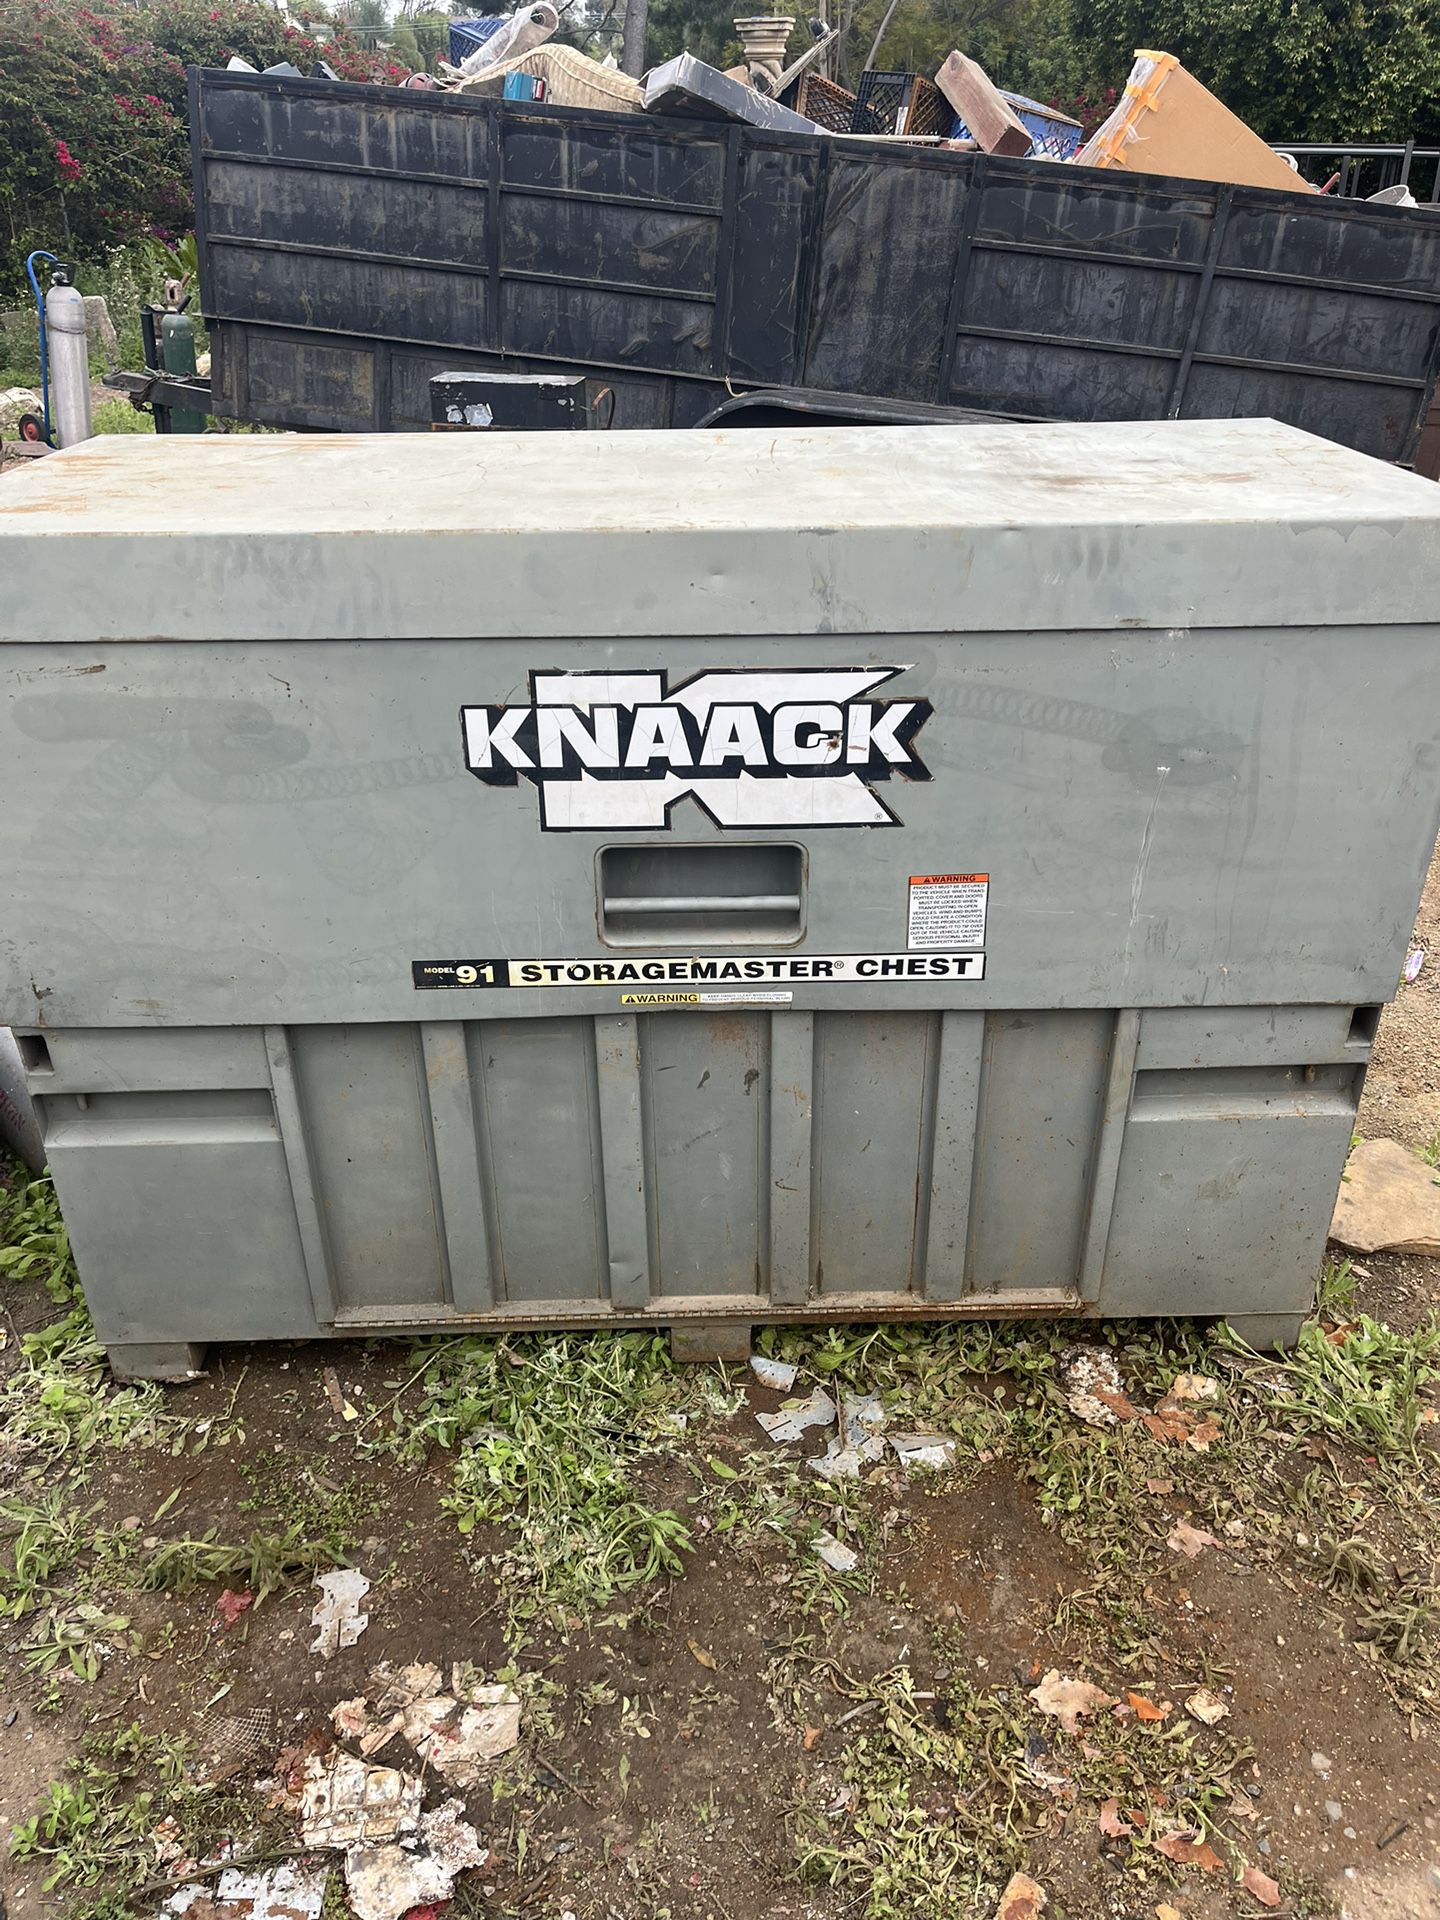 Knaack Storagemaster Model 91